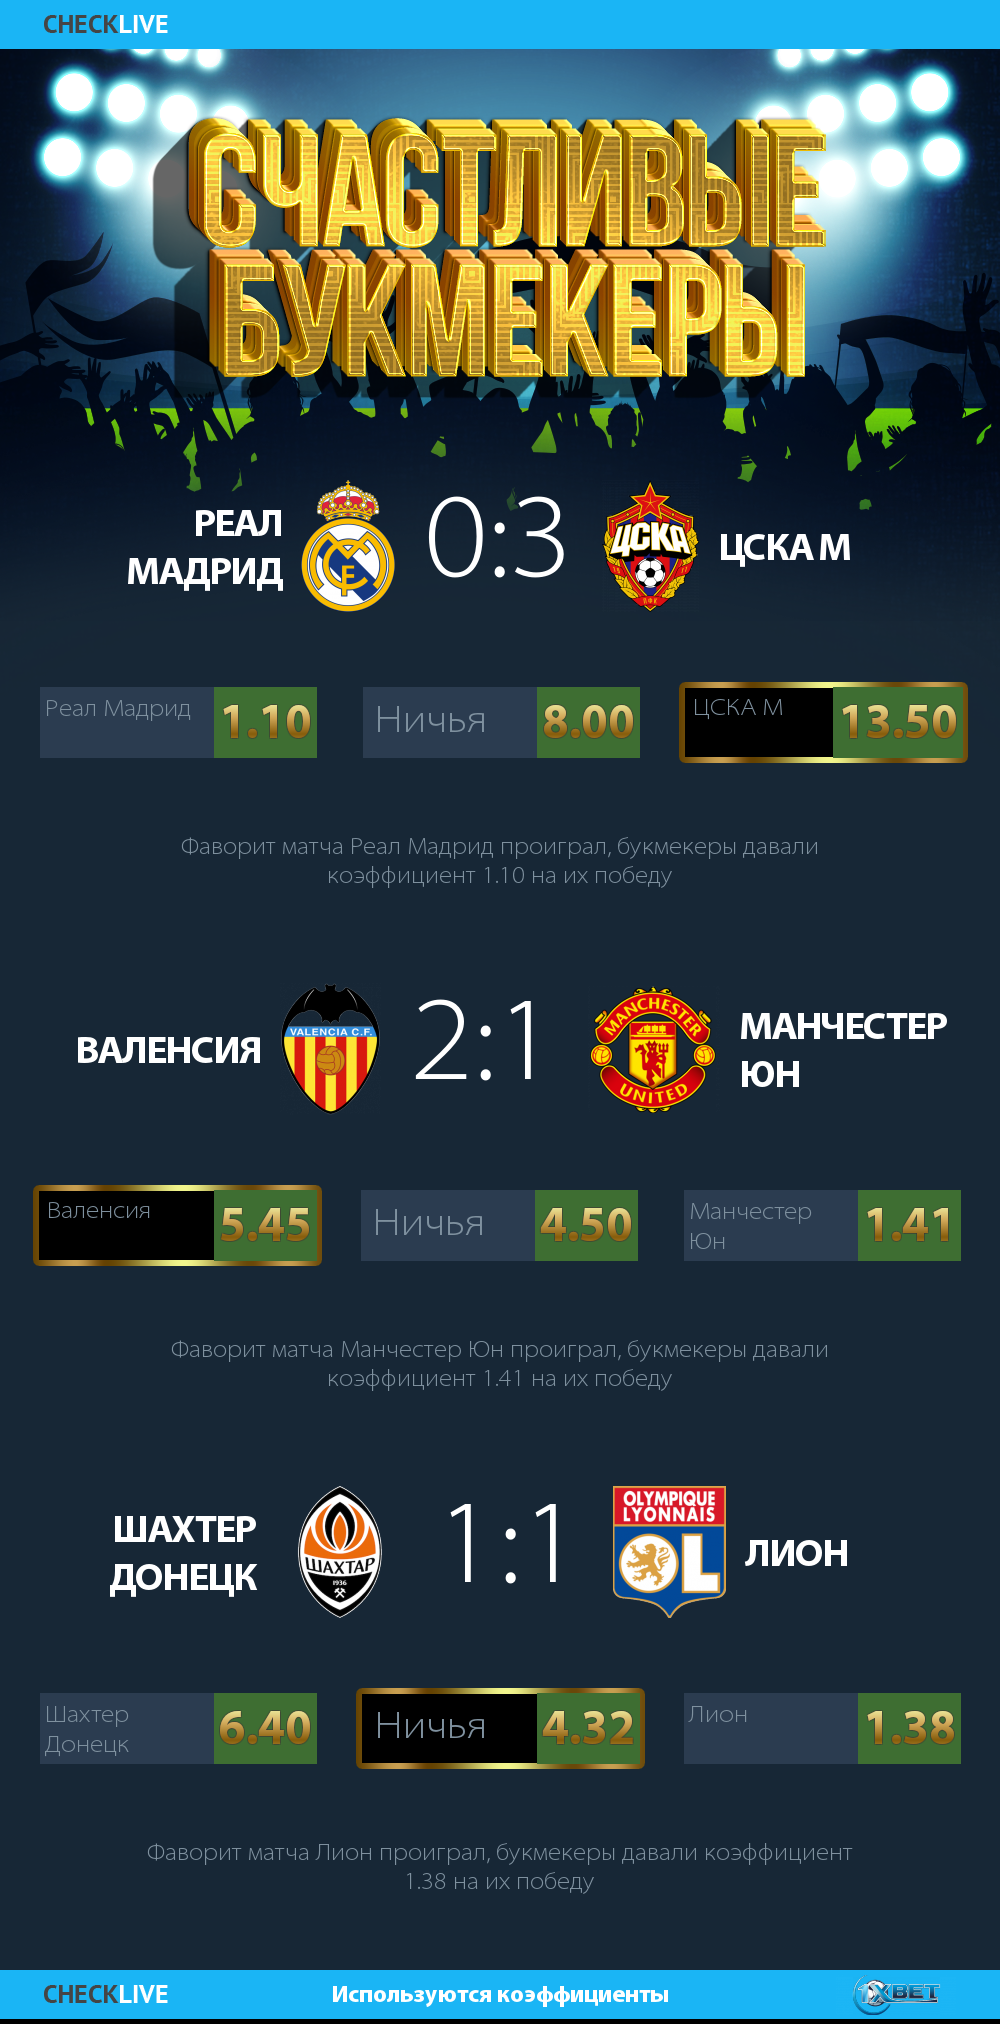 Счастливые букмекеры  инфографика Лига Чемпионов. 12 12 2018